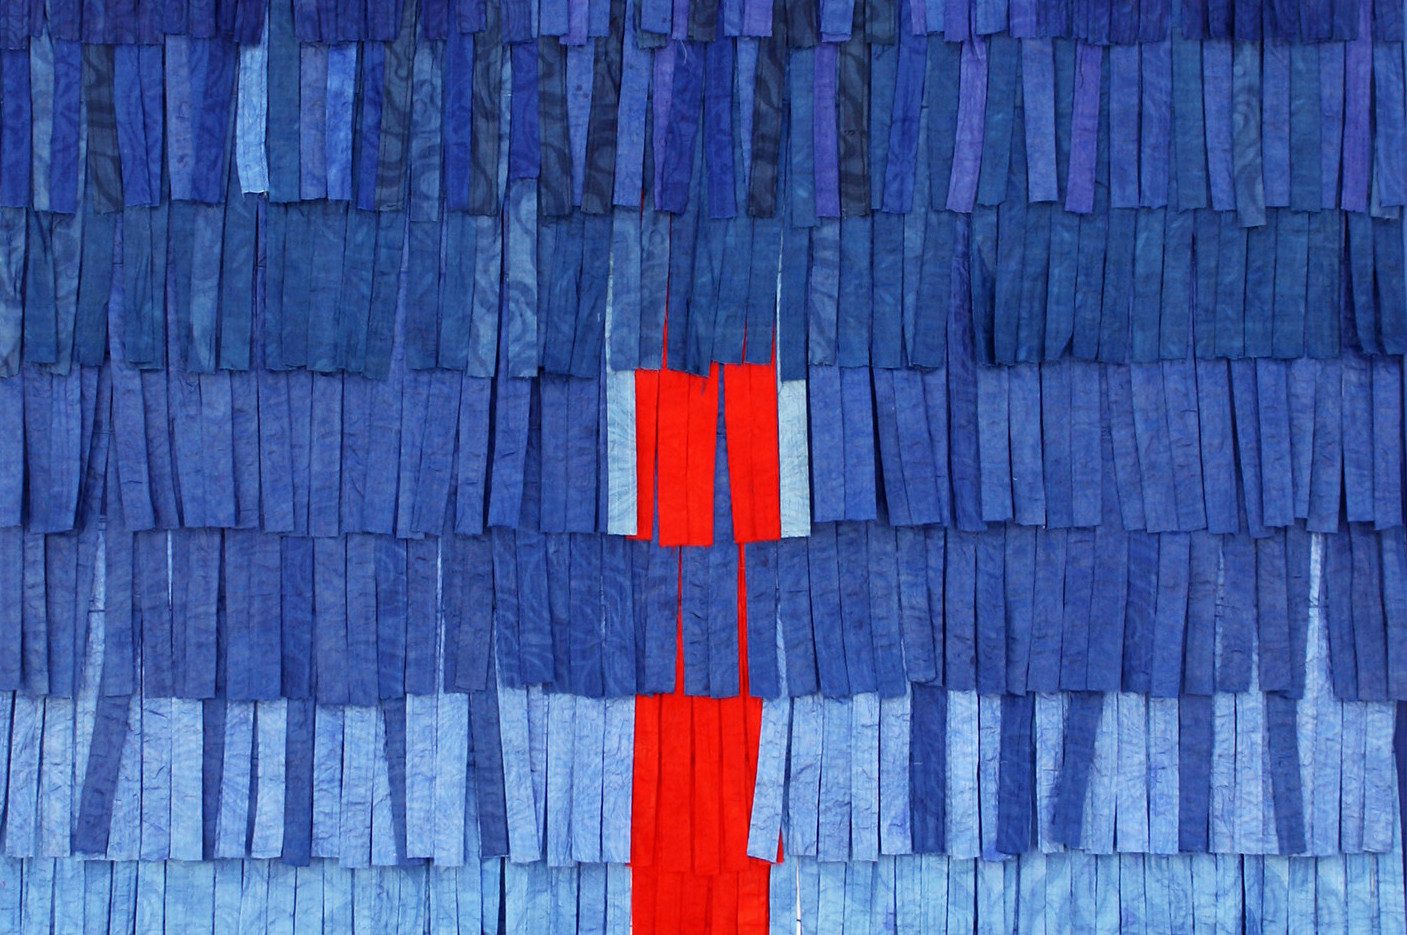 Abdoulaye Konaté, 'Composition 3', (Detail) bazin teint, 228x146cm, 2012